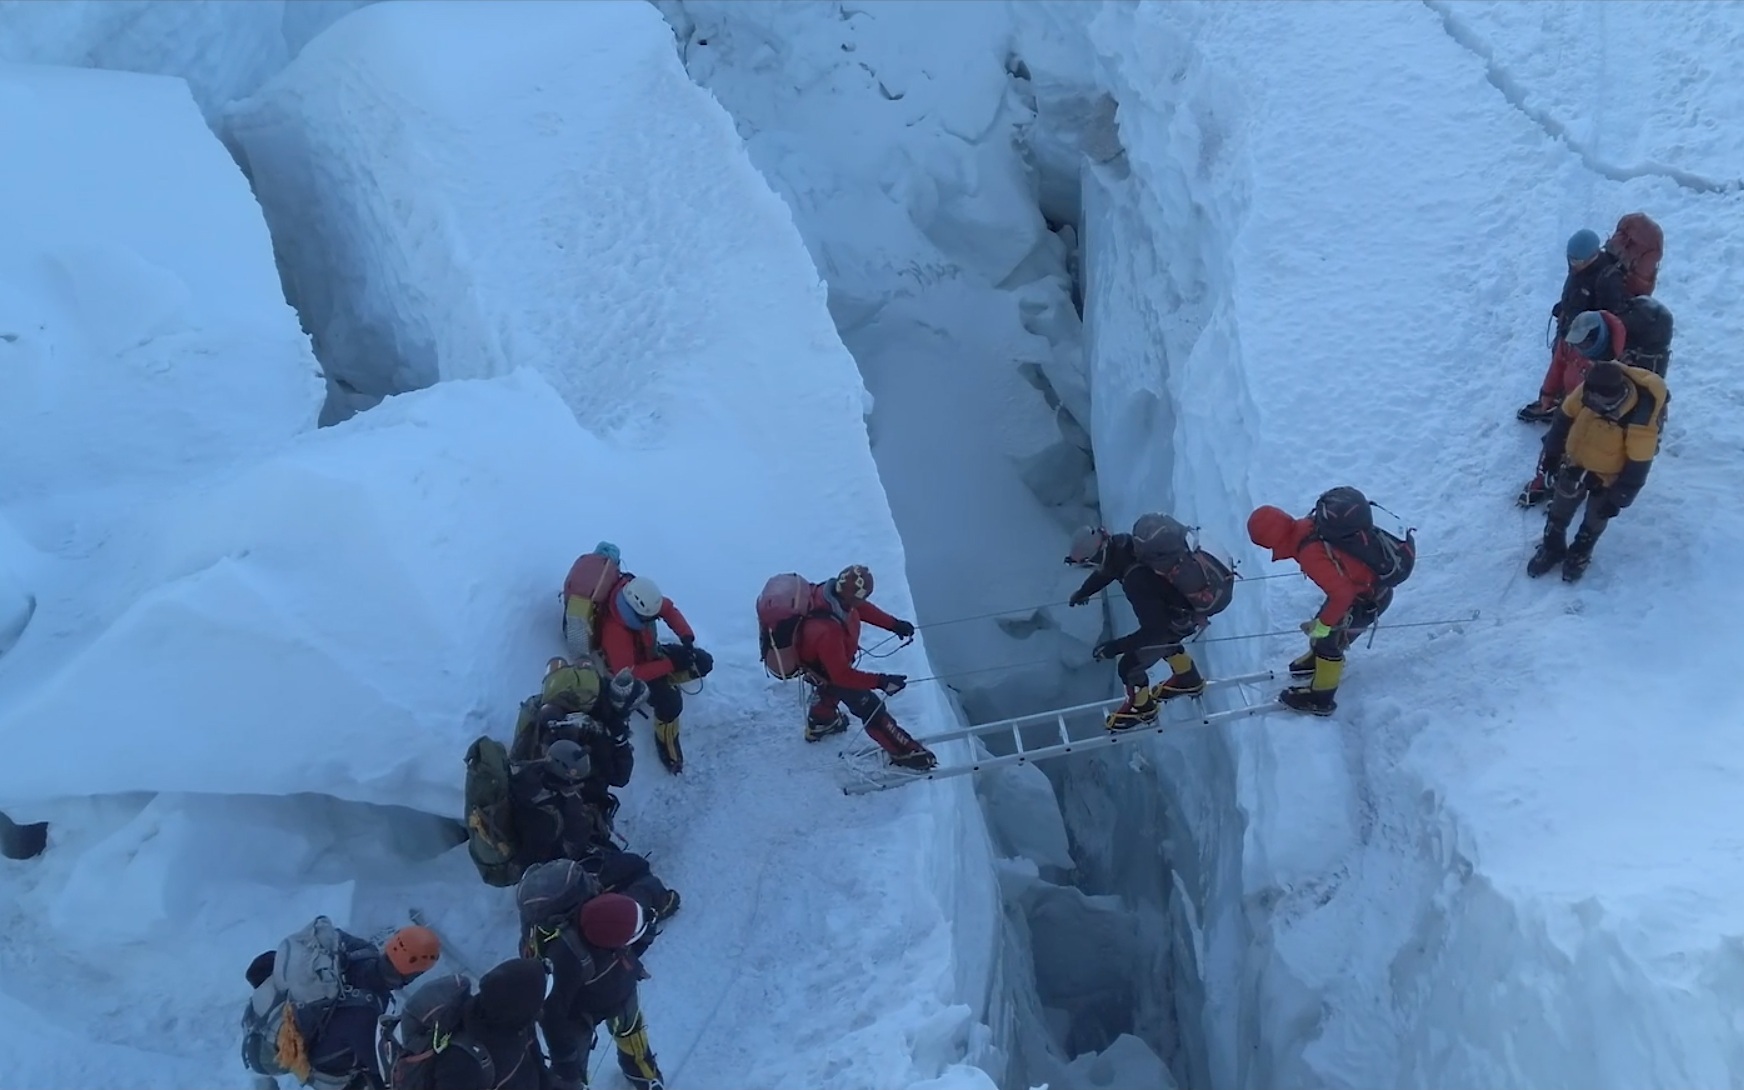 《珠峰队长》以全新视角将珠峰的美景和攀登的艰险展现在全球观众眼前。